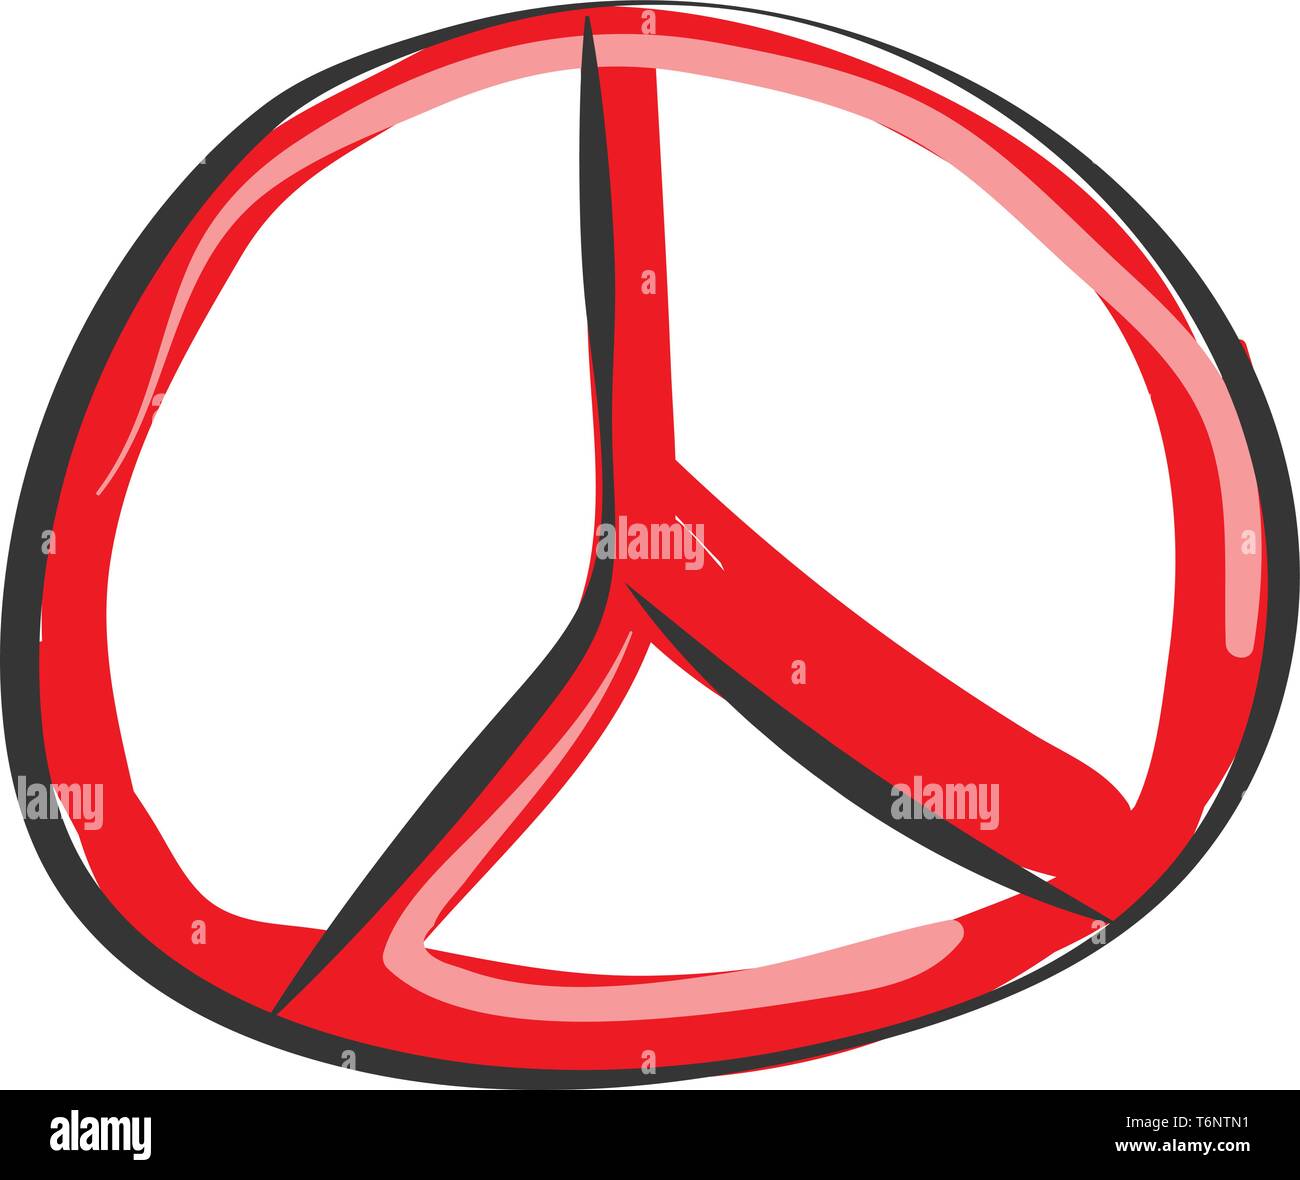 Malerei von Mercedes-Benz Emblem mit der Dreizackige Stern und die umliegenden Ring in roter Farbe vector Farbe, Zeichnung oder Abbildung Stock Vektor